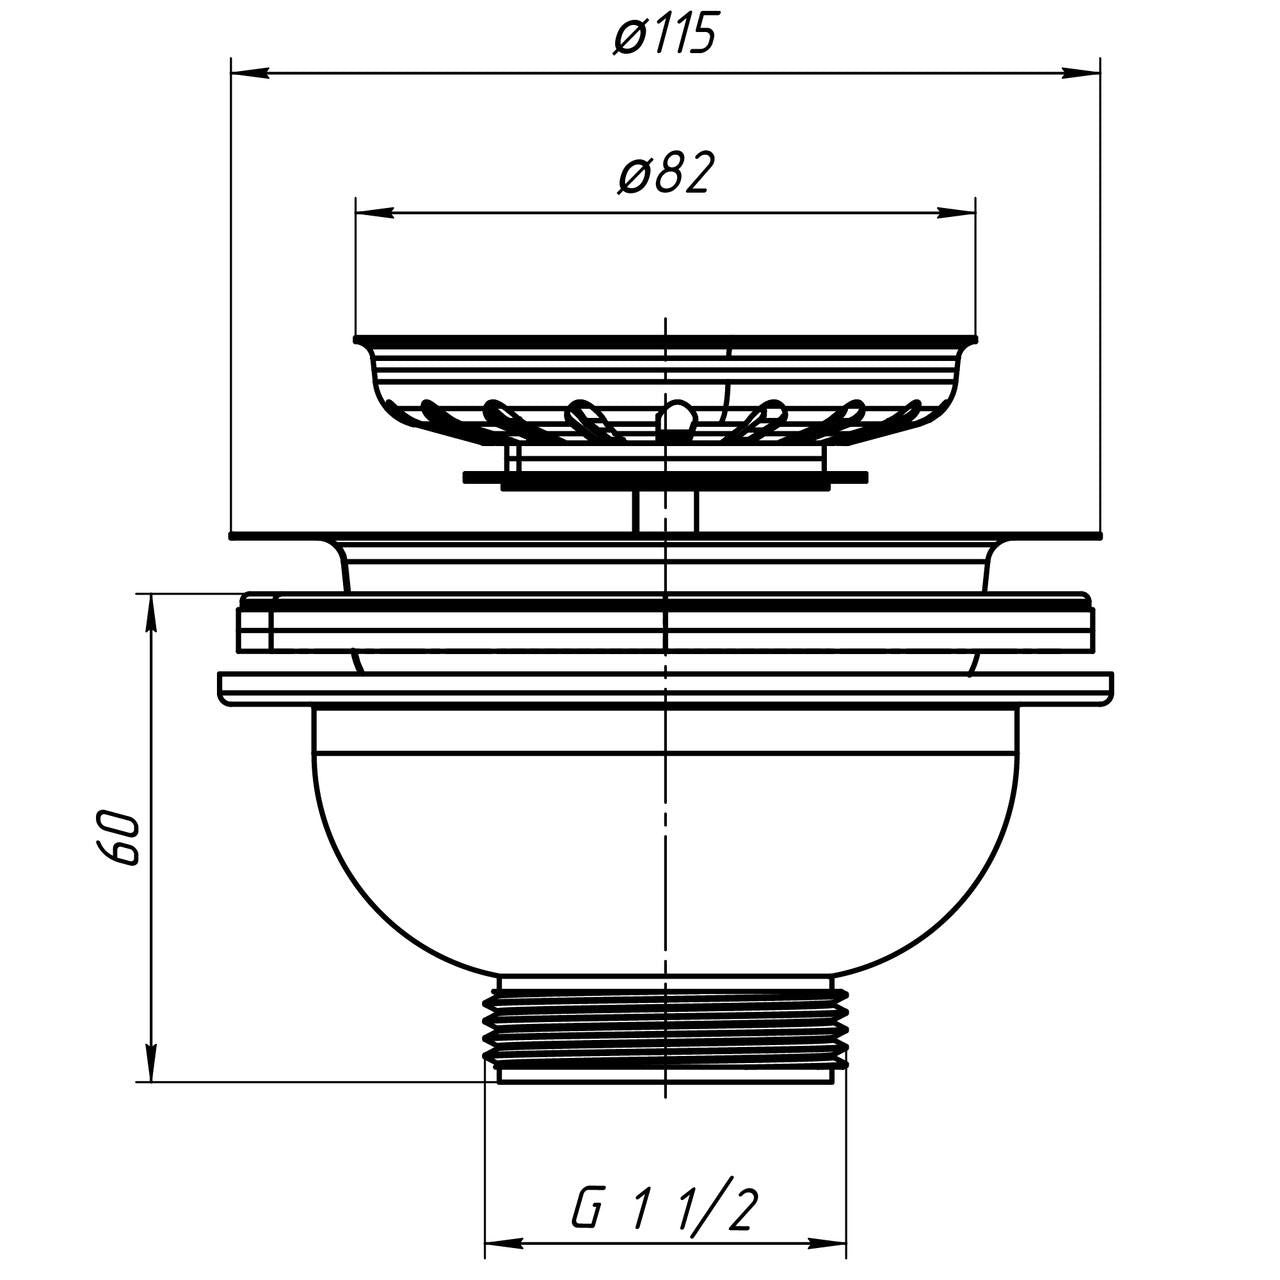 Aniplast 115mm Stainless Steel Strainer Basket for Kitchen Sink Basin Drain Waste Trap 